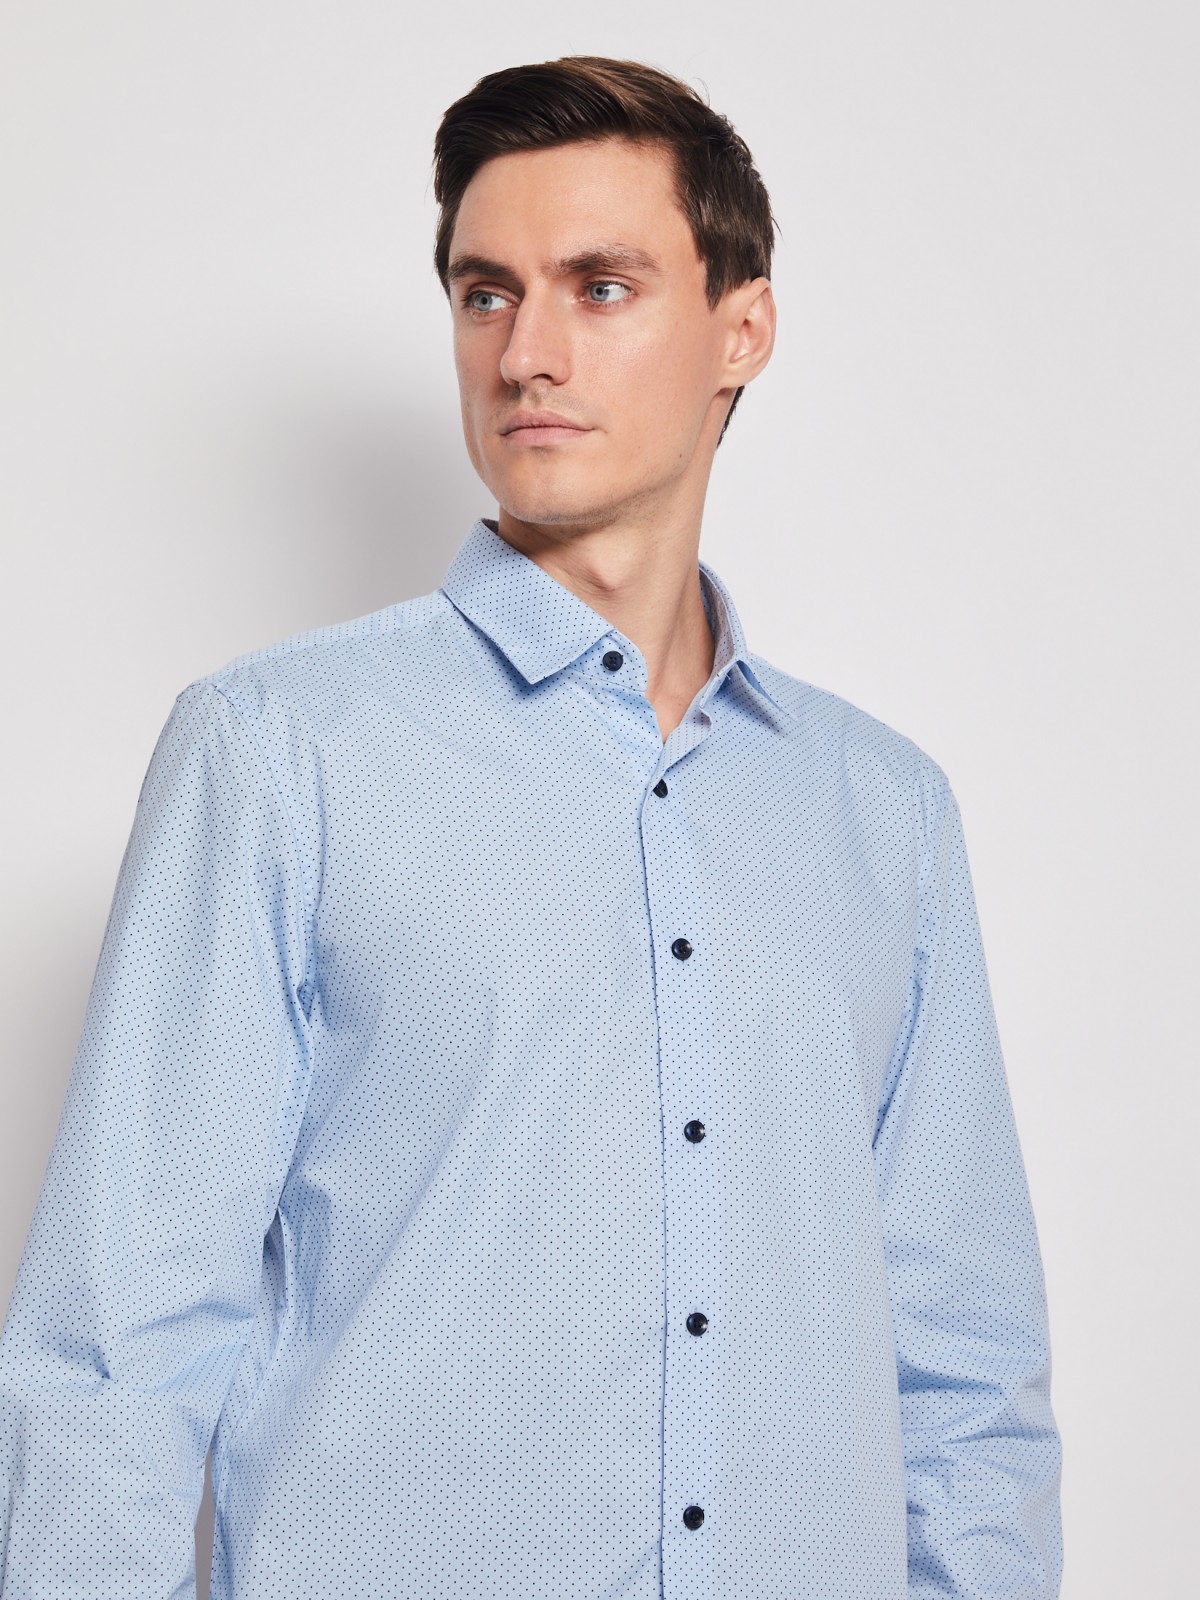 Рубашка в горошек с длинным рукавом zolla 012112162032, цвет светло-голубой, размер S - фото 2